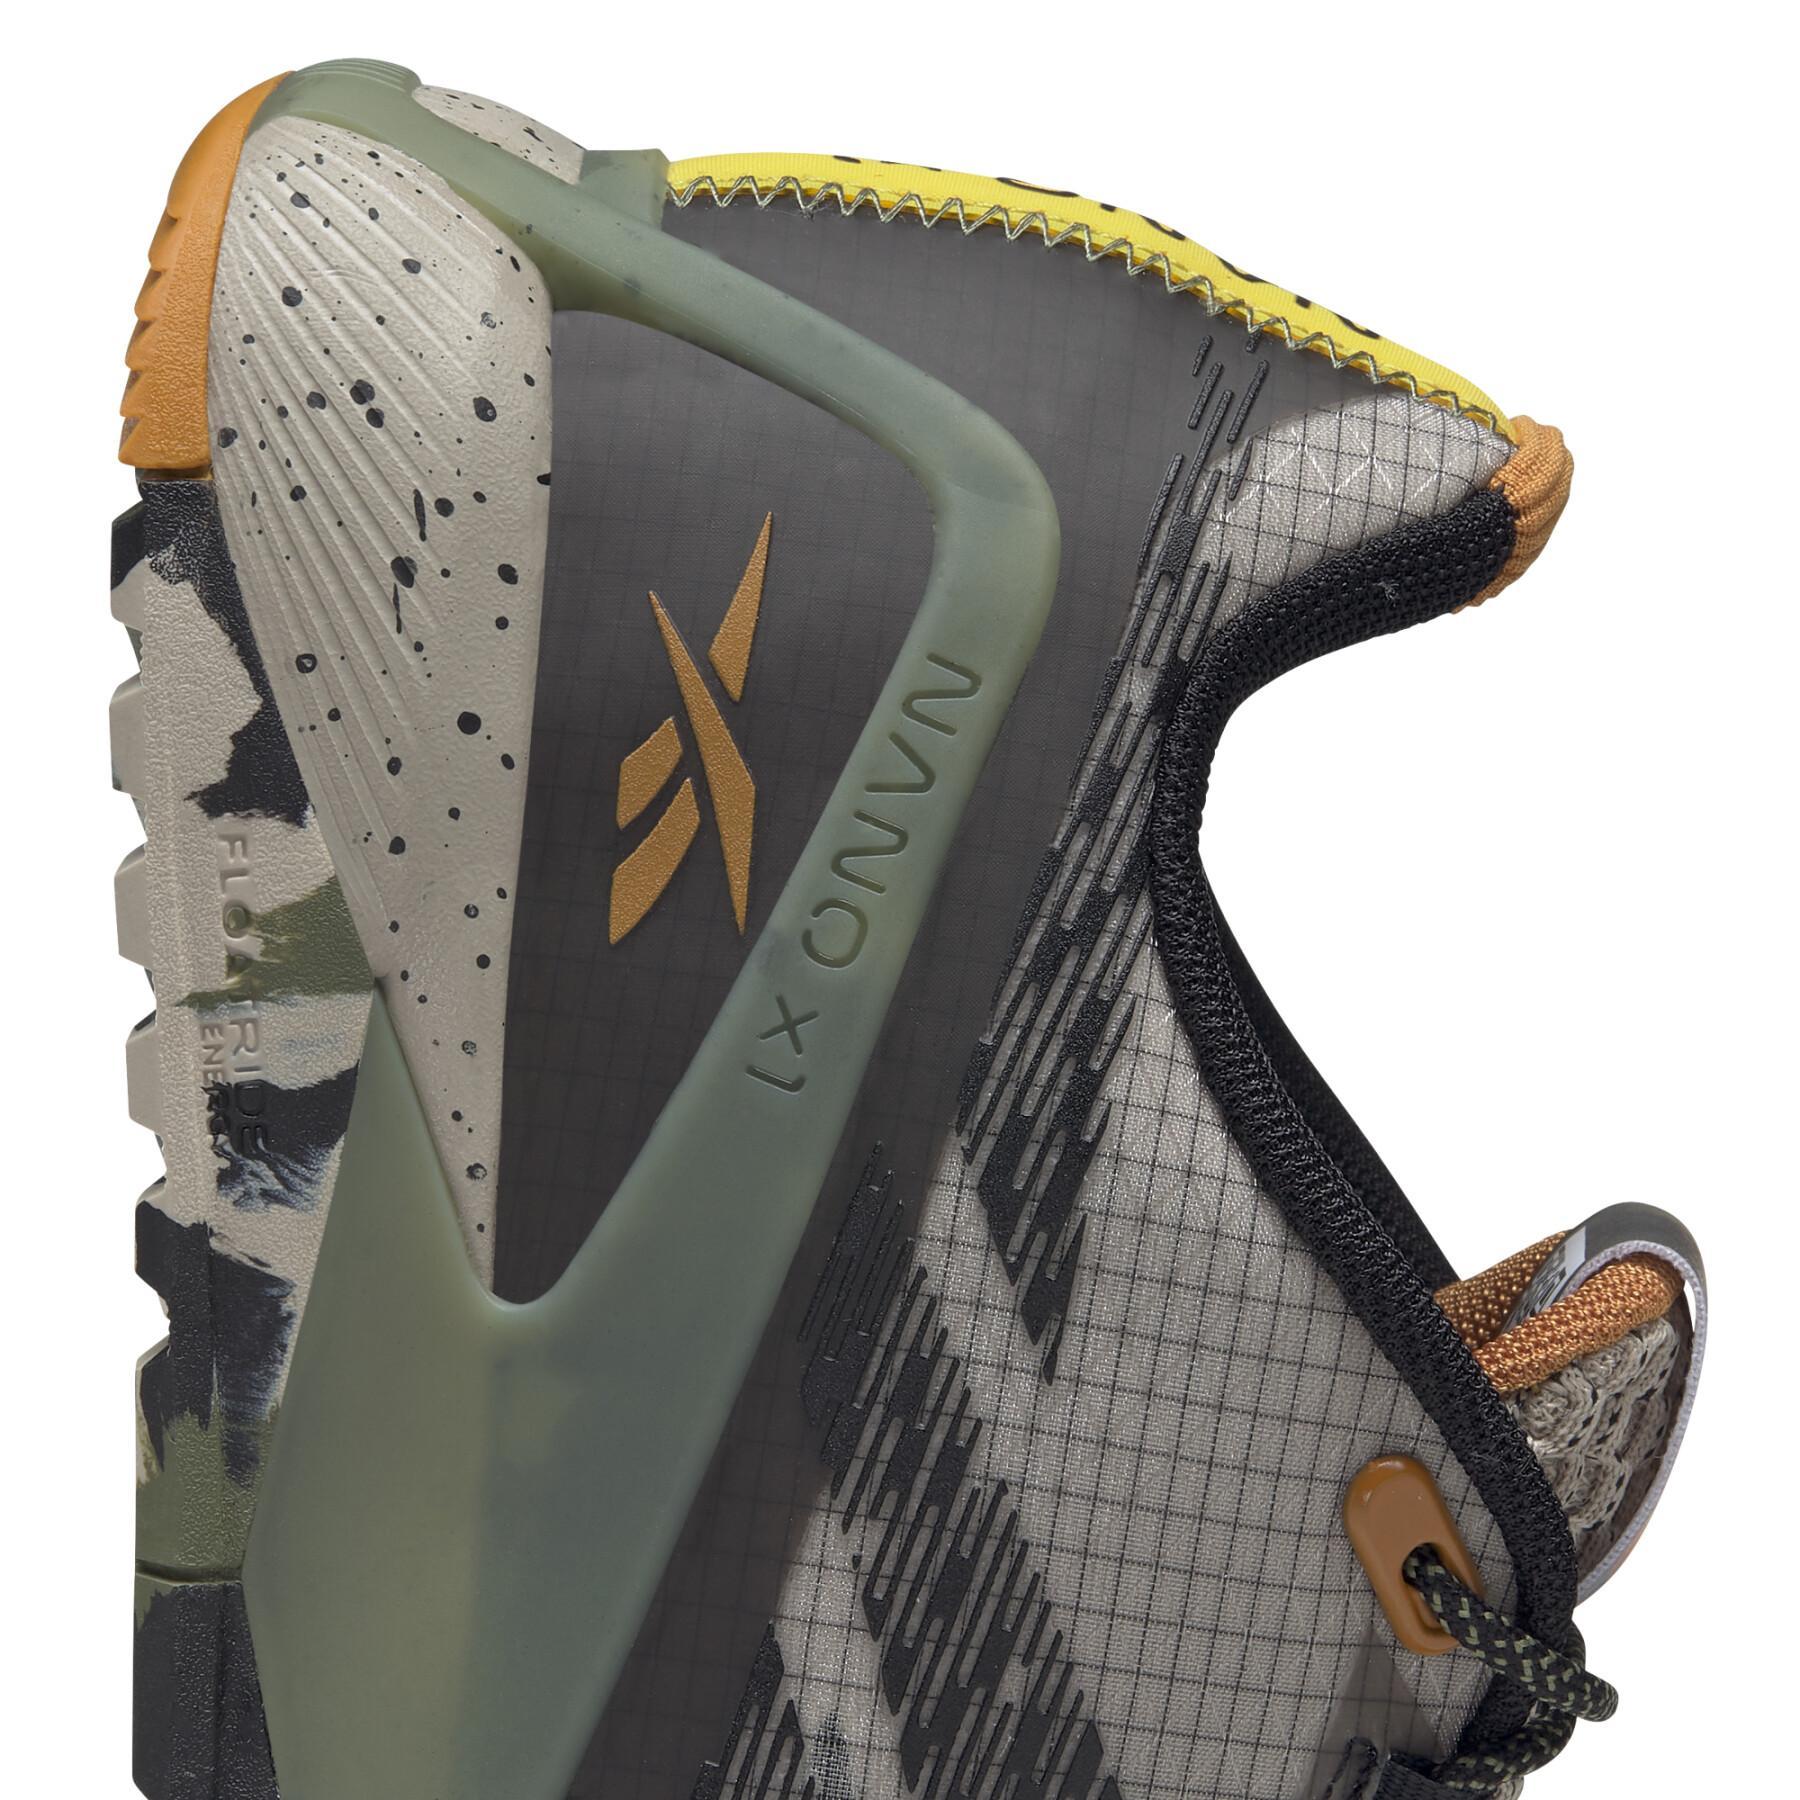 Zapatillas de deporte para mujeres Reebok National Geographic Nano X1 Adventure